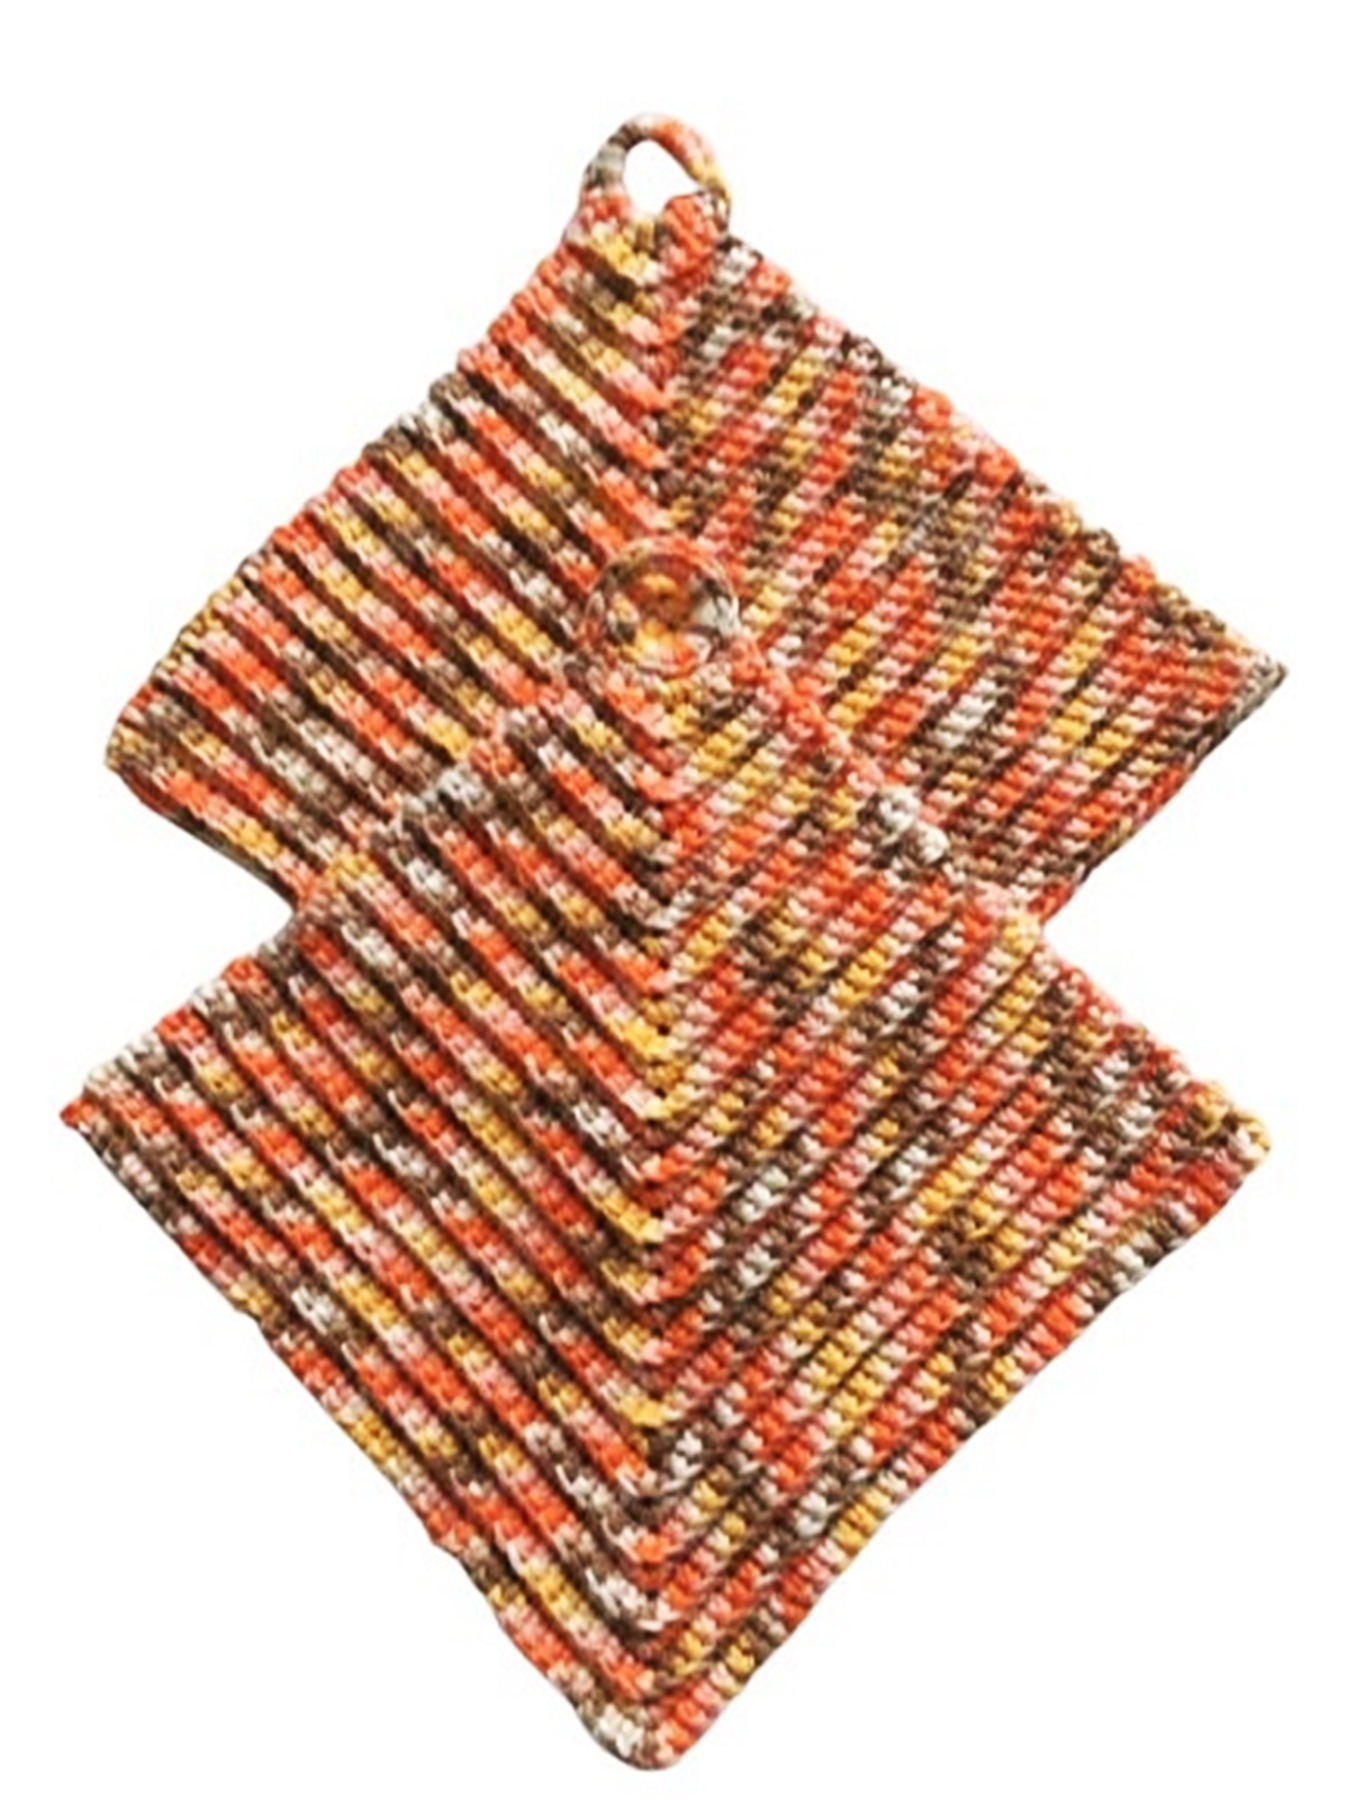 Topflappen klassischer Stil ca 19 x 19 cm - 100 Baumwolle -natur weiß orange Nr 540 2